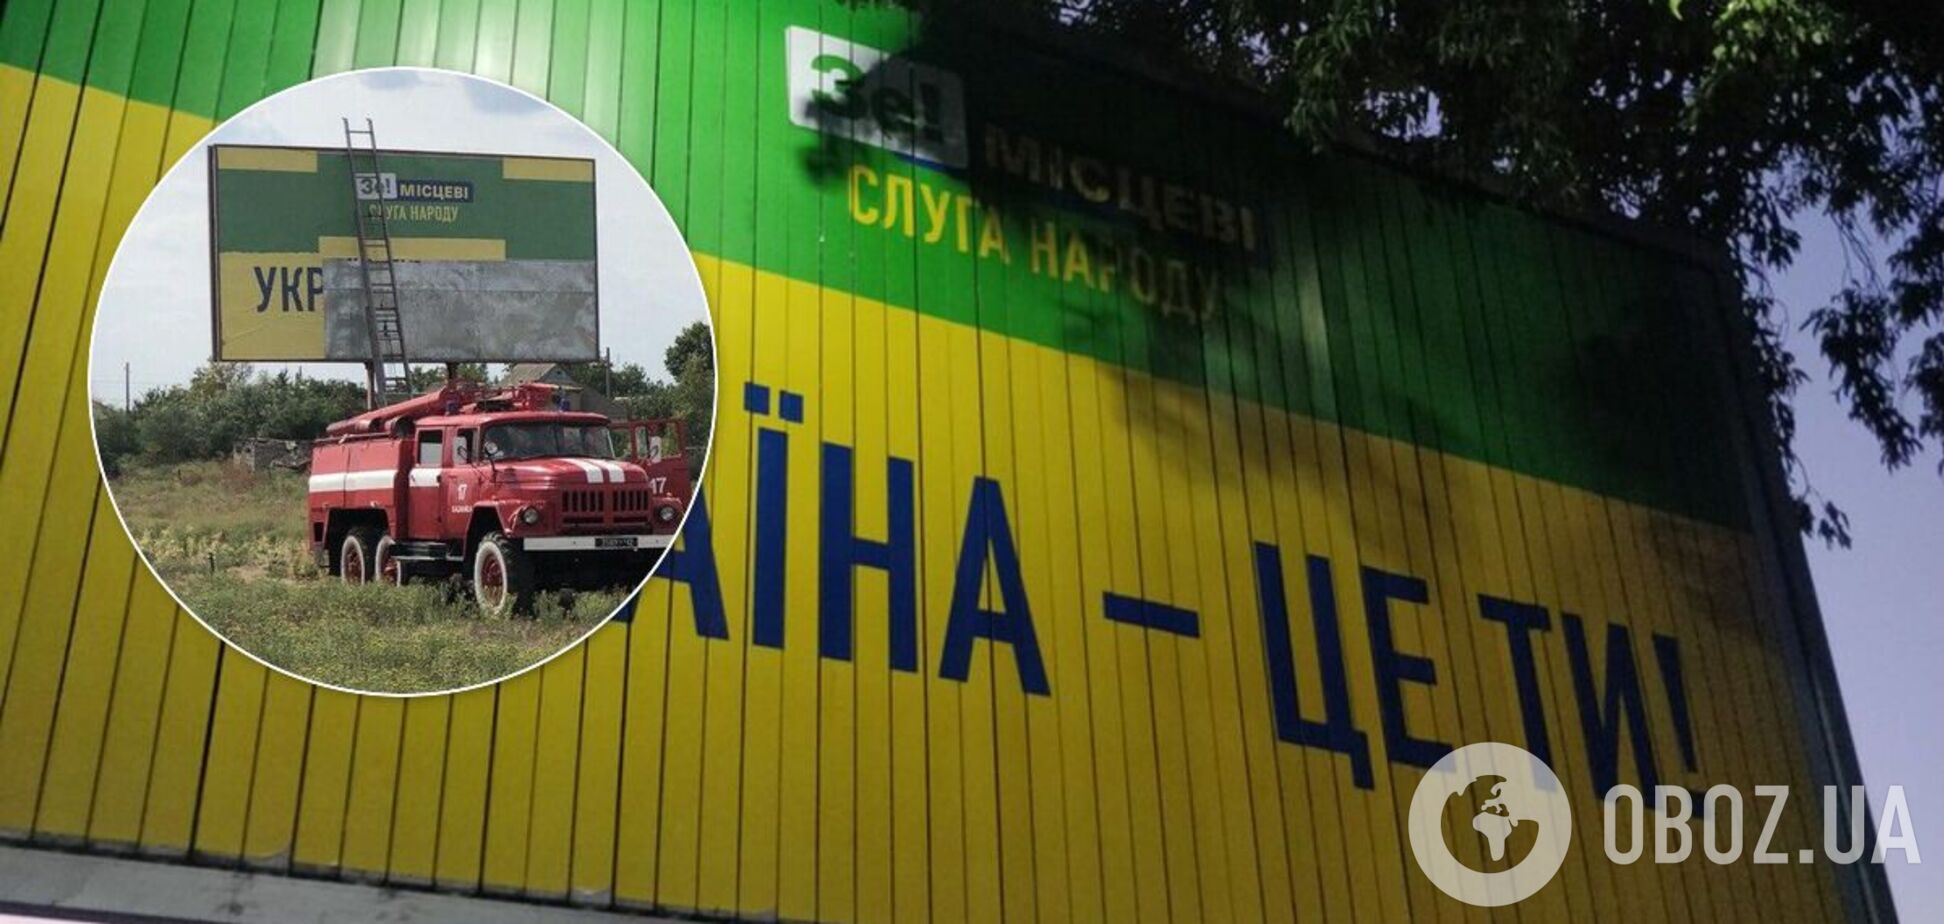 Нардеп Негулевський пояснив, чому пожежники клеїли борд 'Слуги народу'